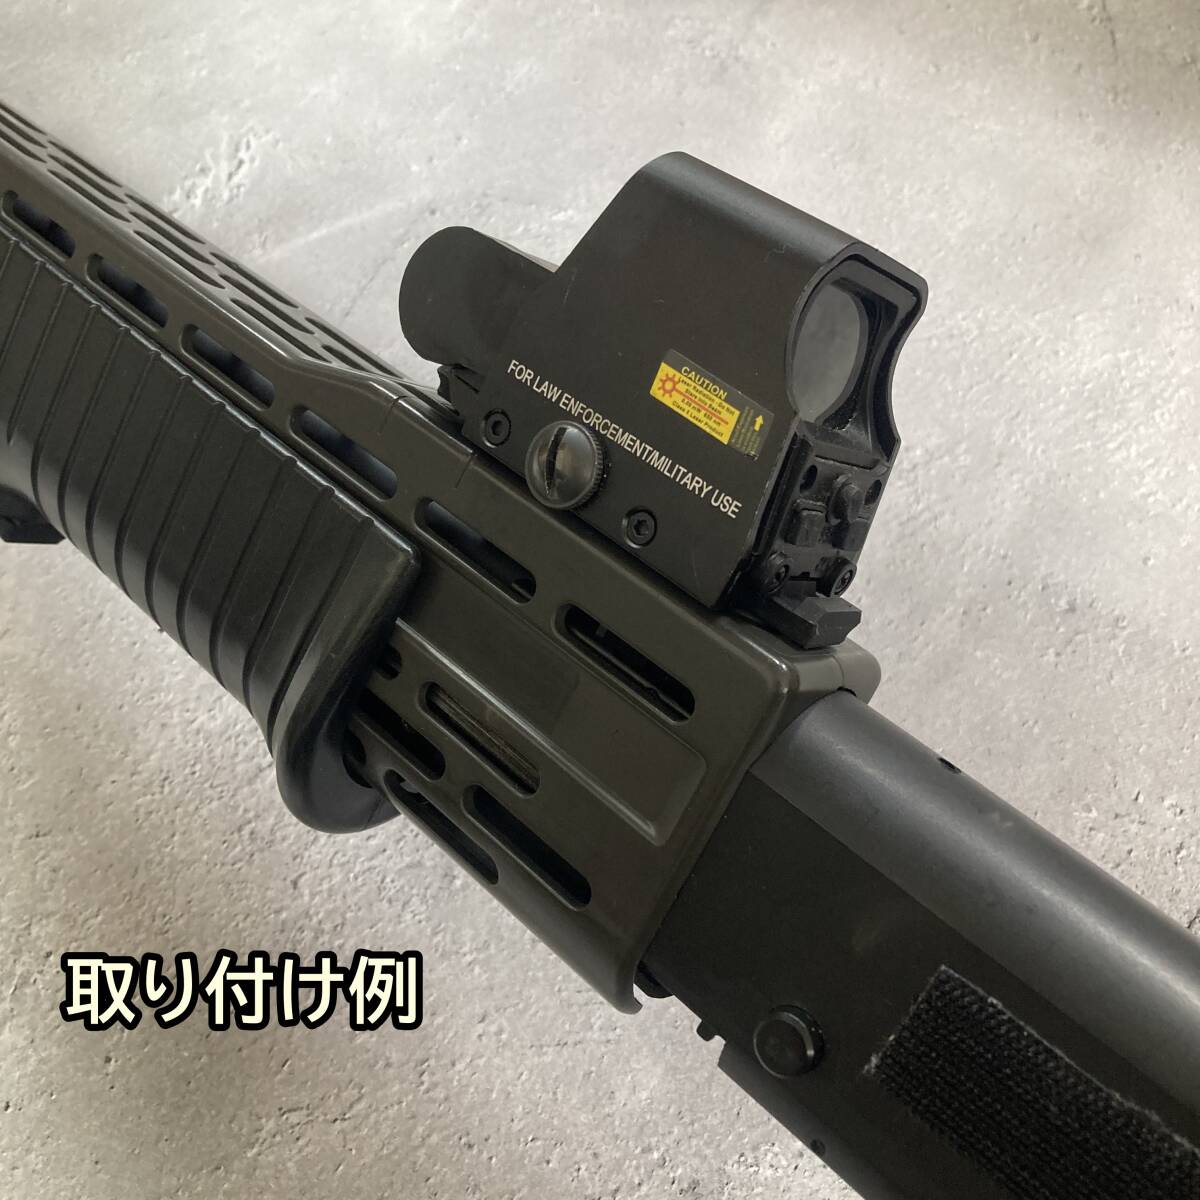 東京マルイ スパス12 対応 20mm リアサイトマウント ショットガン SPAS12